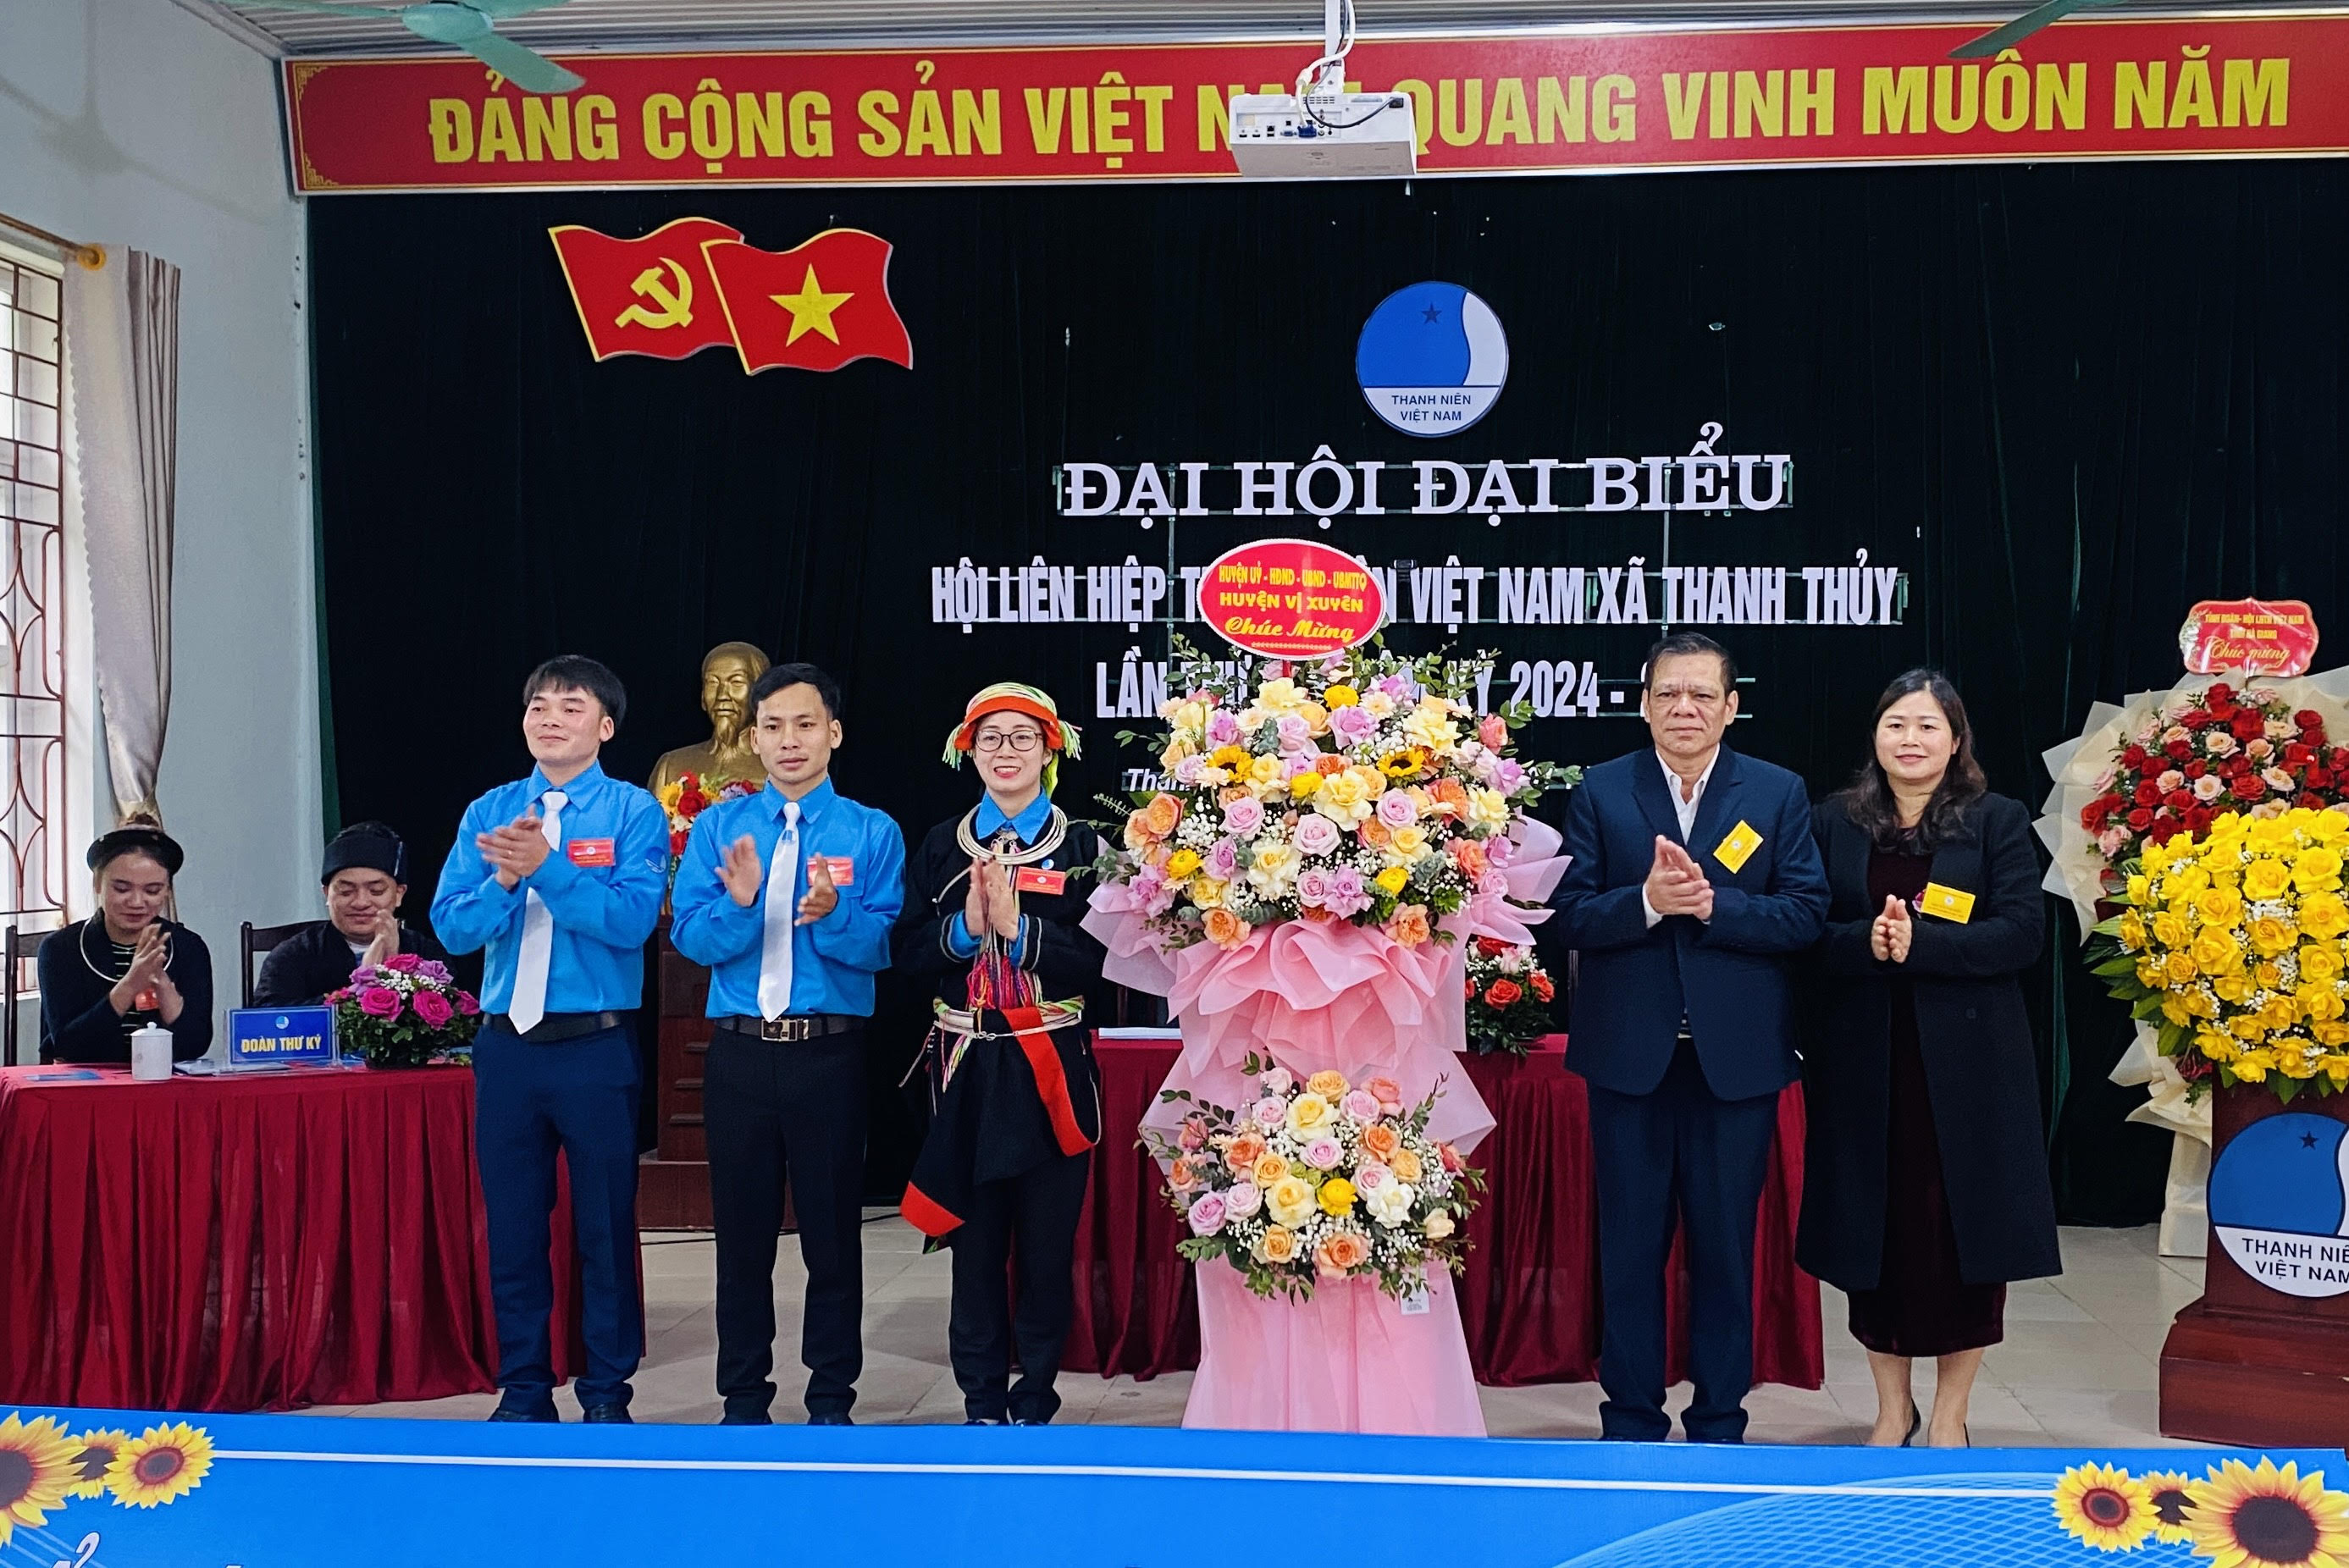 Đại hội Đại biểu hội liên hiệp thanh niên Việt Nam xã Thanh Thuỷ lần thứ VI, Nhiệm kỳ 2024-2029